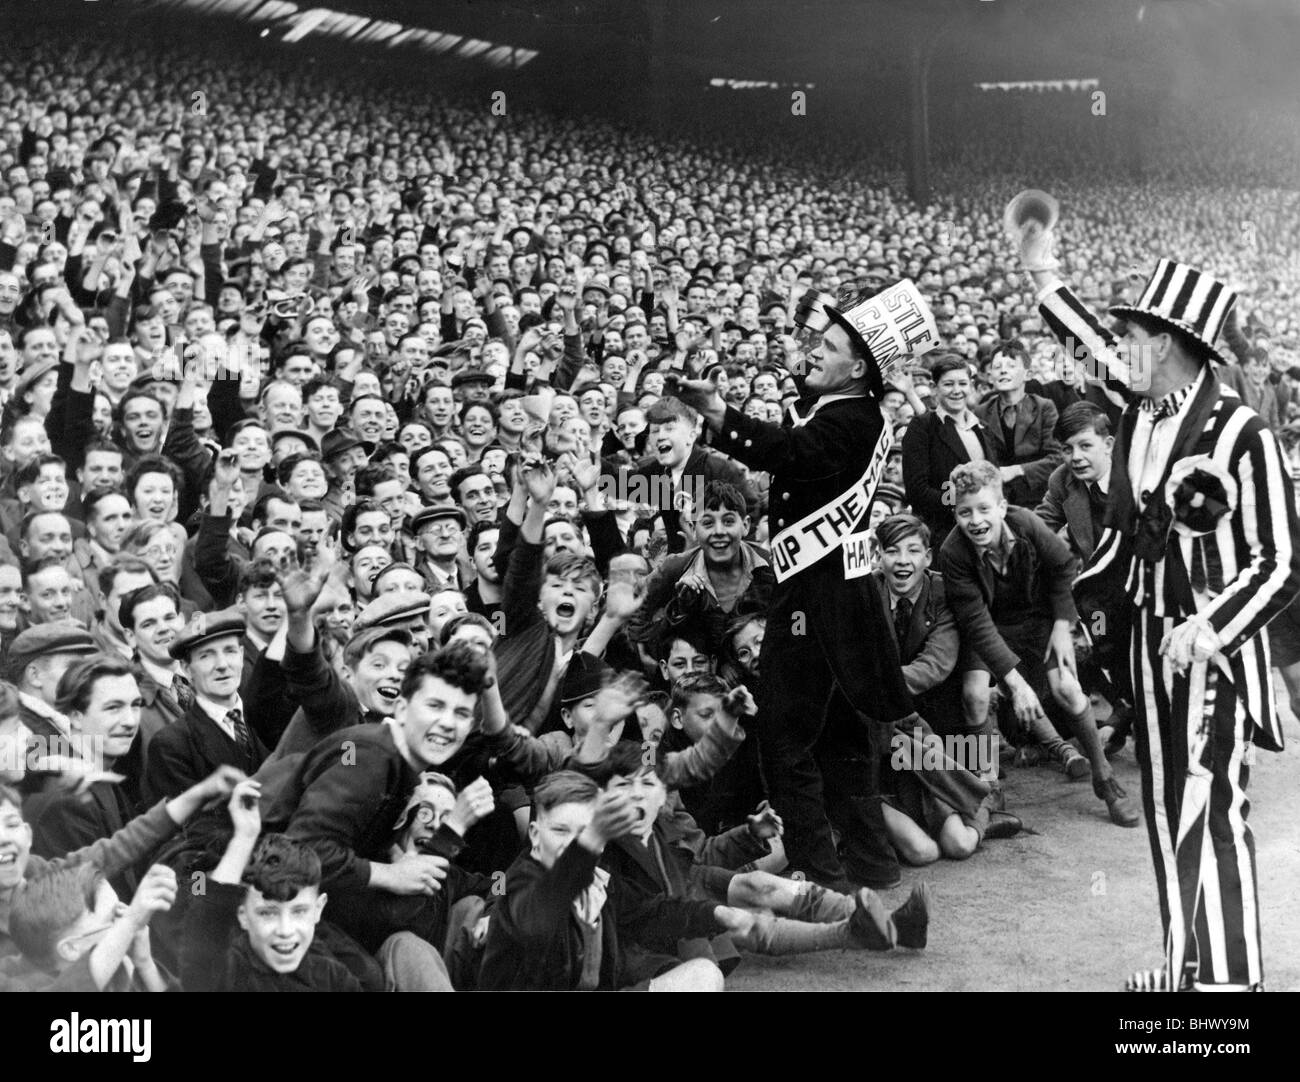 Mascotte Newcastle Jimmy Nichol mène les applaudissements de la foule avant de Newcastle le jeu avec Sheffield mercredi 30 avril 1949 Tout au long de la 40 et 50, le soutien de l'a été comme un incroyable qu'il est maintenant. Défilé de Newcastle un supporter officiel comme mascotte un cheer-leader en ces jours. Décoré en noir et blanc bien sûr, il est décrit l'orchestration des chansons à la fin de l'Leazes Gallowgate stadium. Banque D'Images